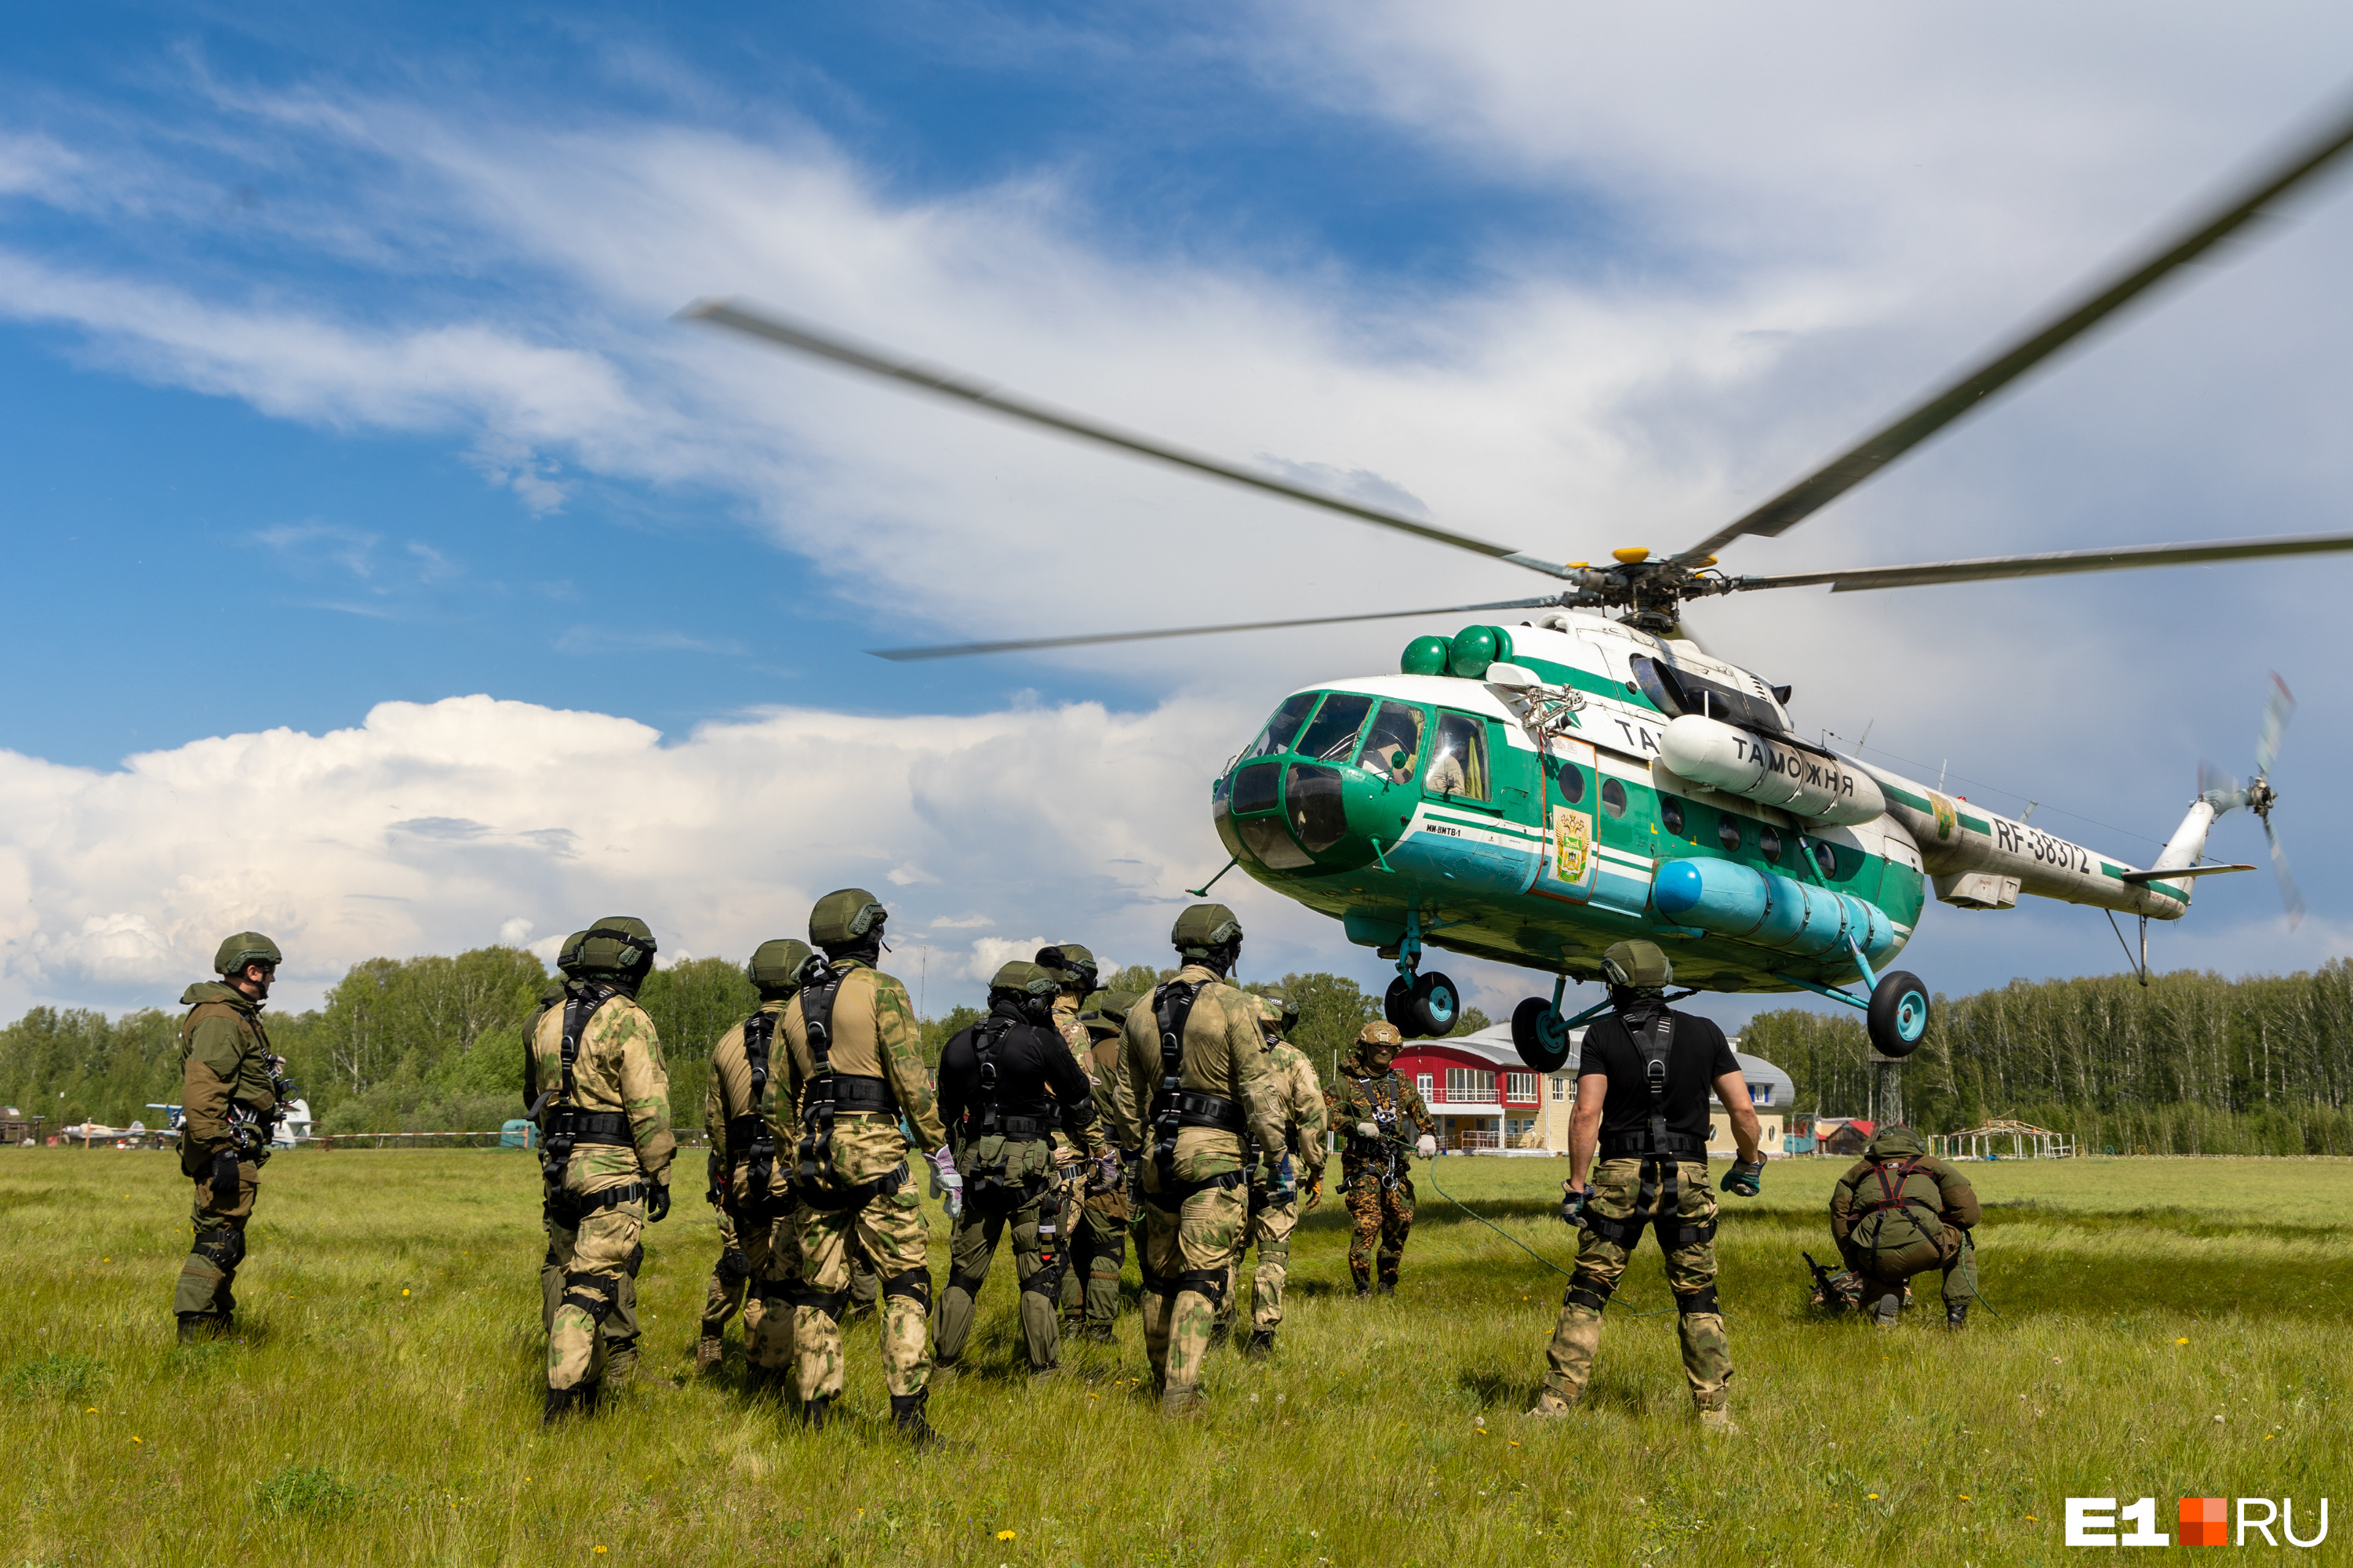 Под Екатеринбургом спецназ на вертолете эффектно задержал бандита: видео